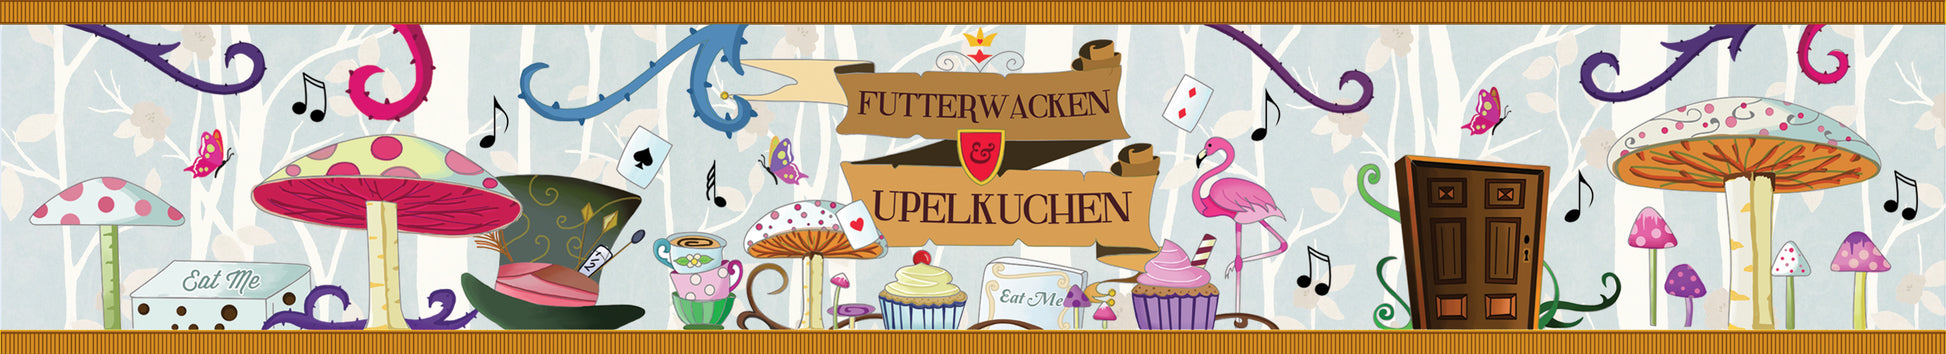 Futterwacken and Upelkuchen scented candle label.